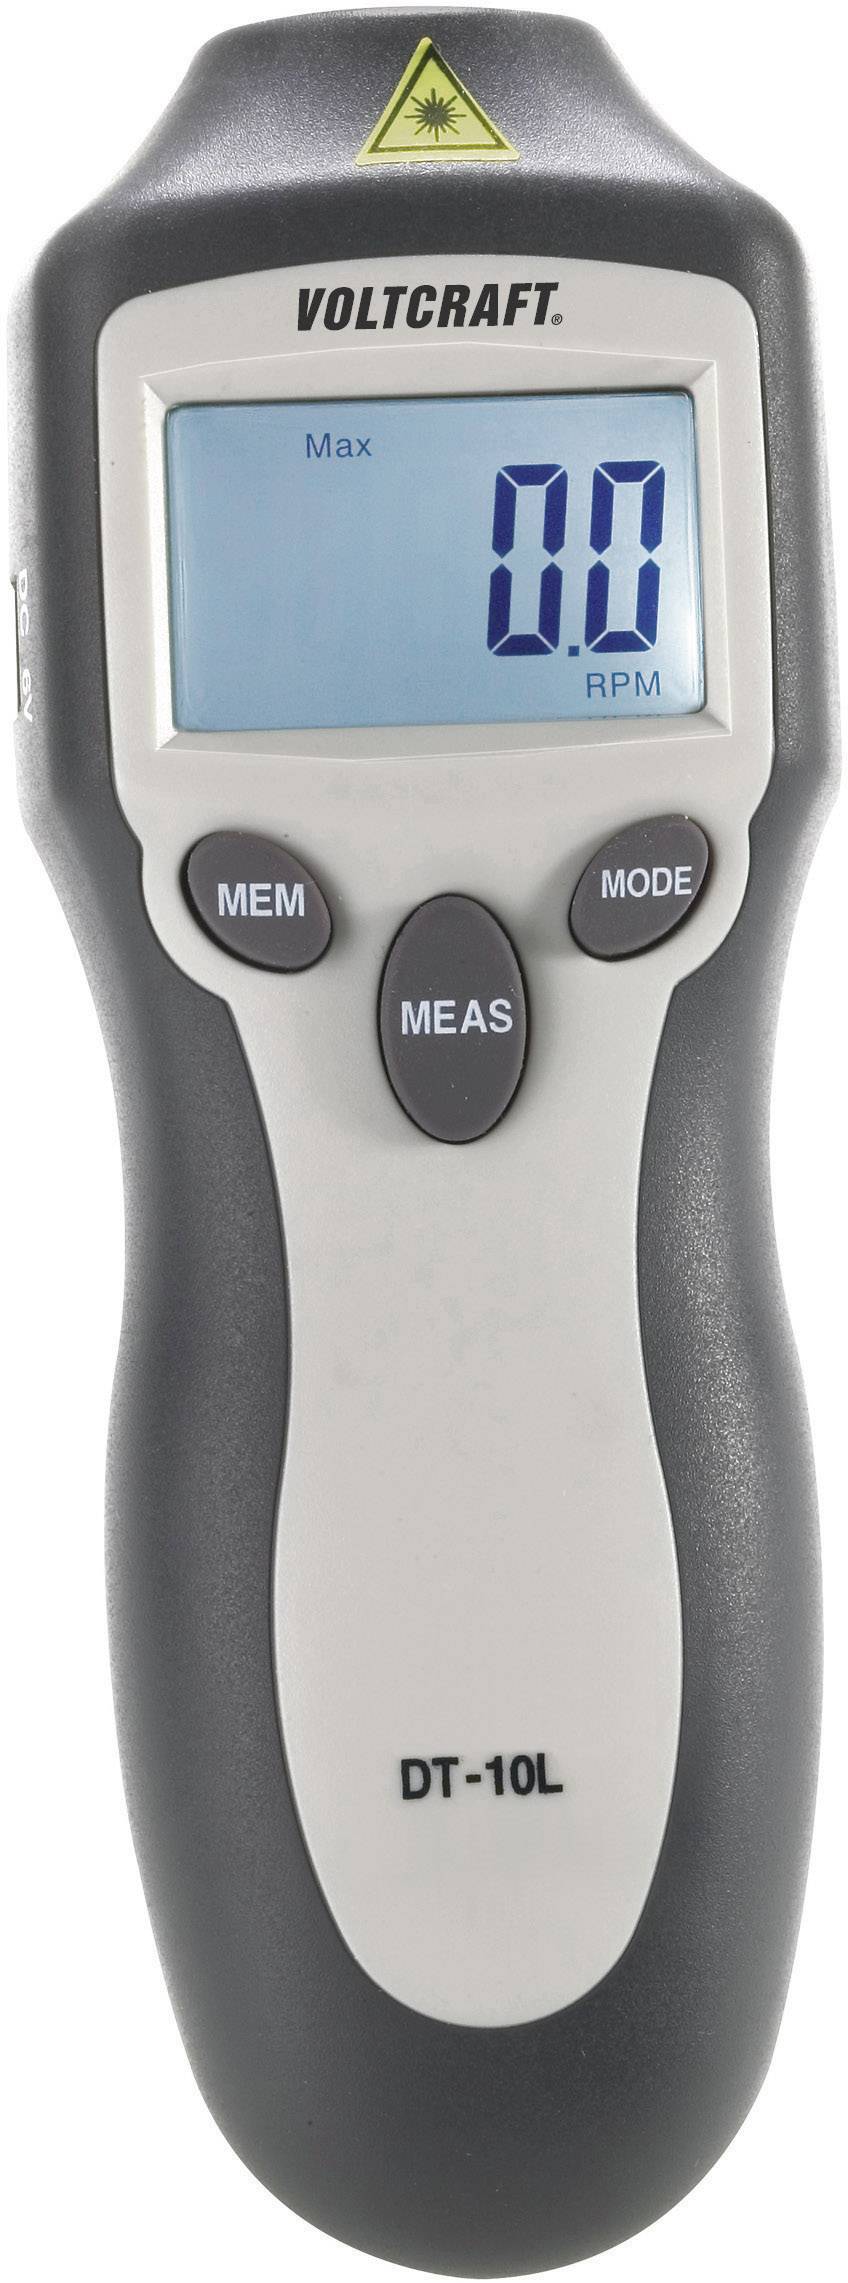 misuratore di giri senza contatto 2.5-99999 giri/min per misuratore di velocità tester di rotazione contagiri senza contatto Contagiri digitale